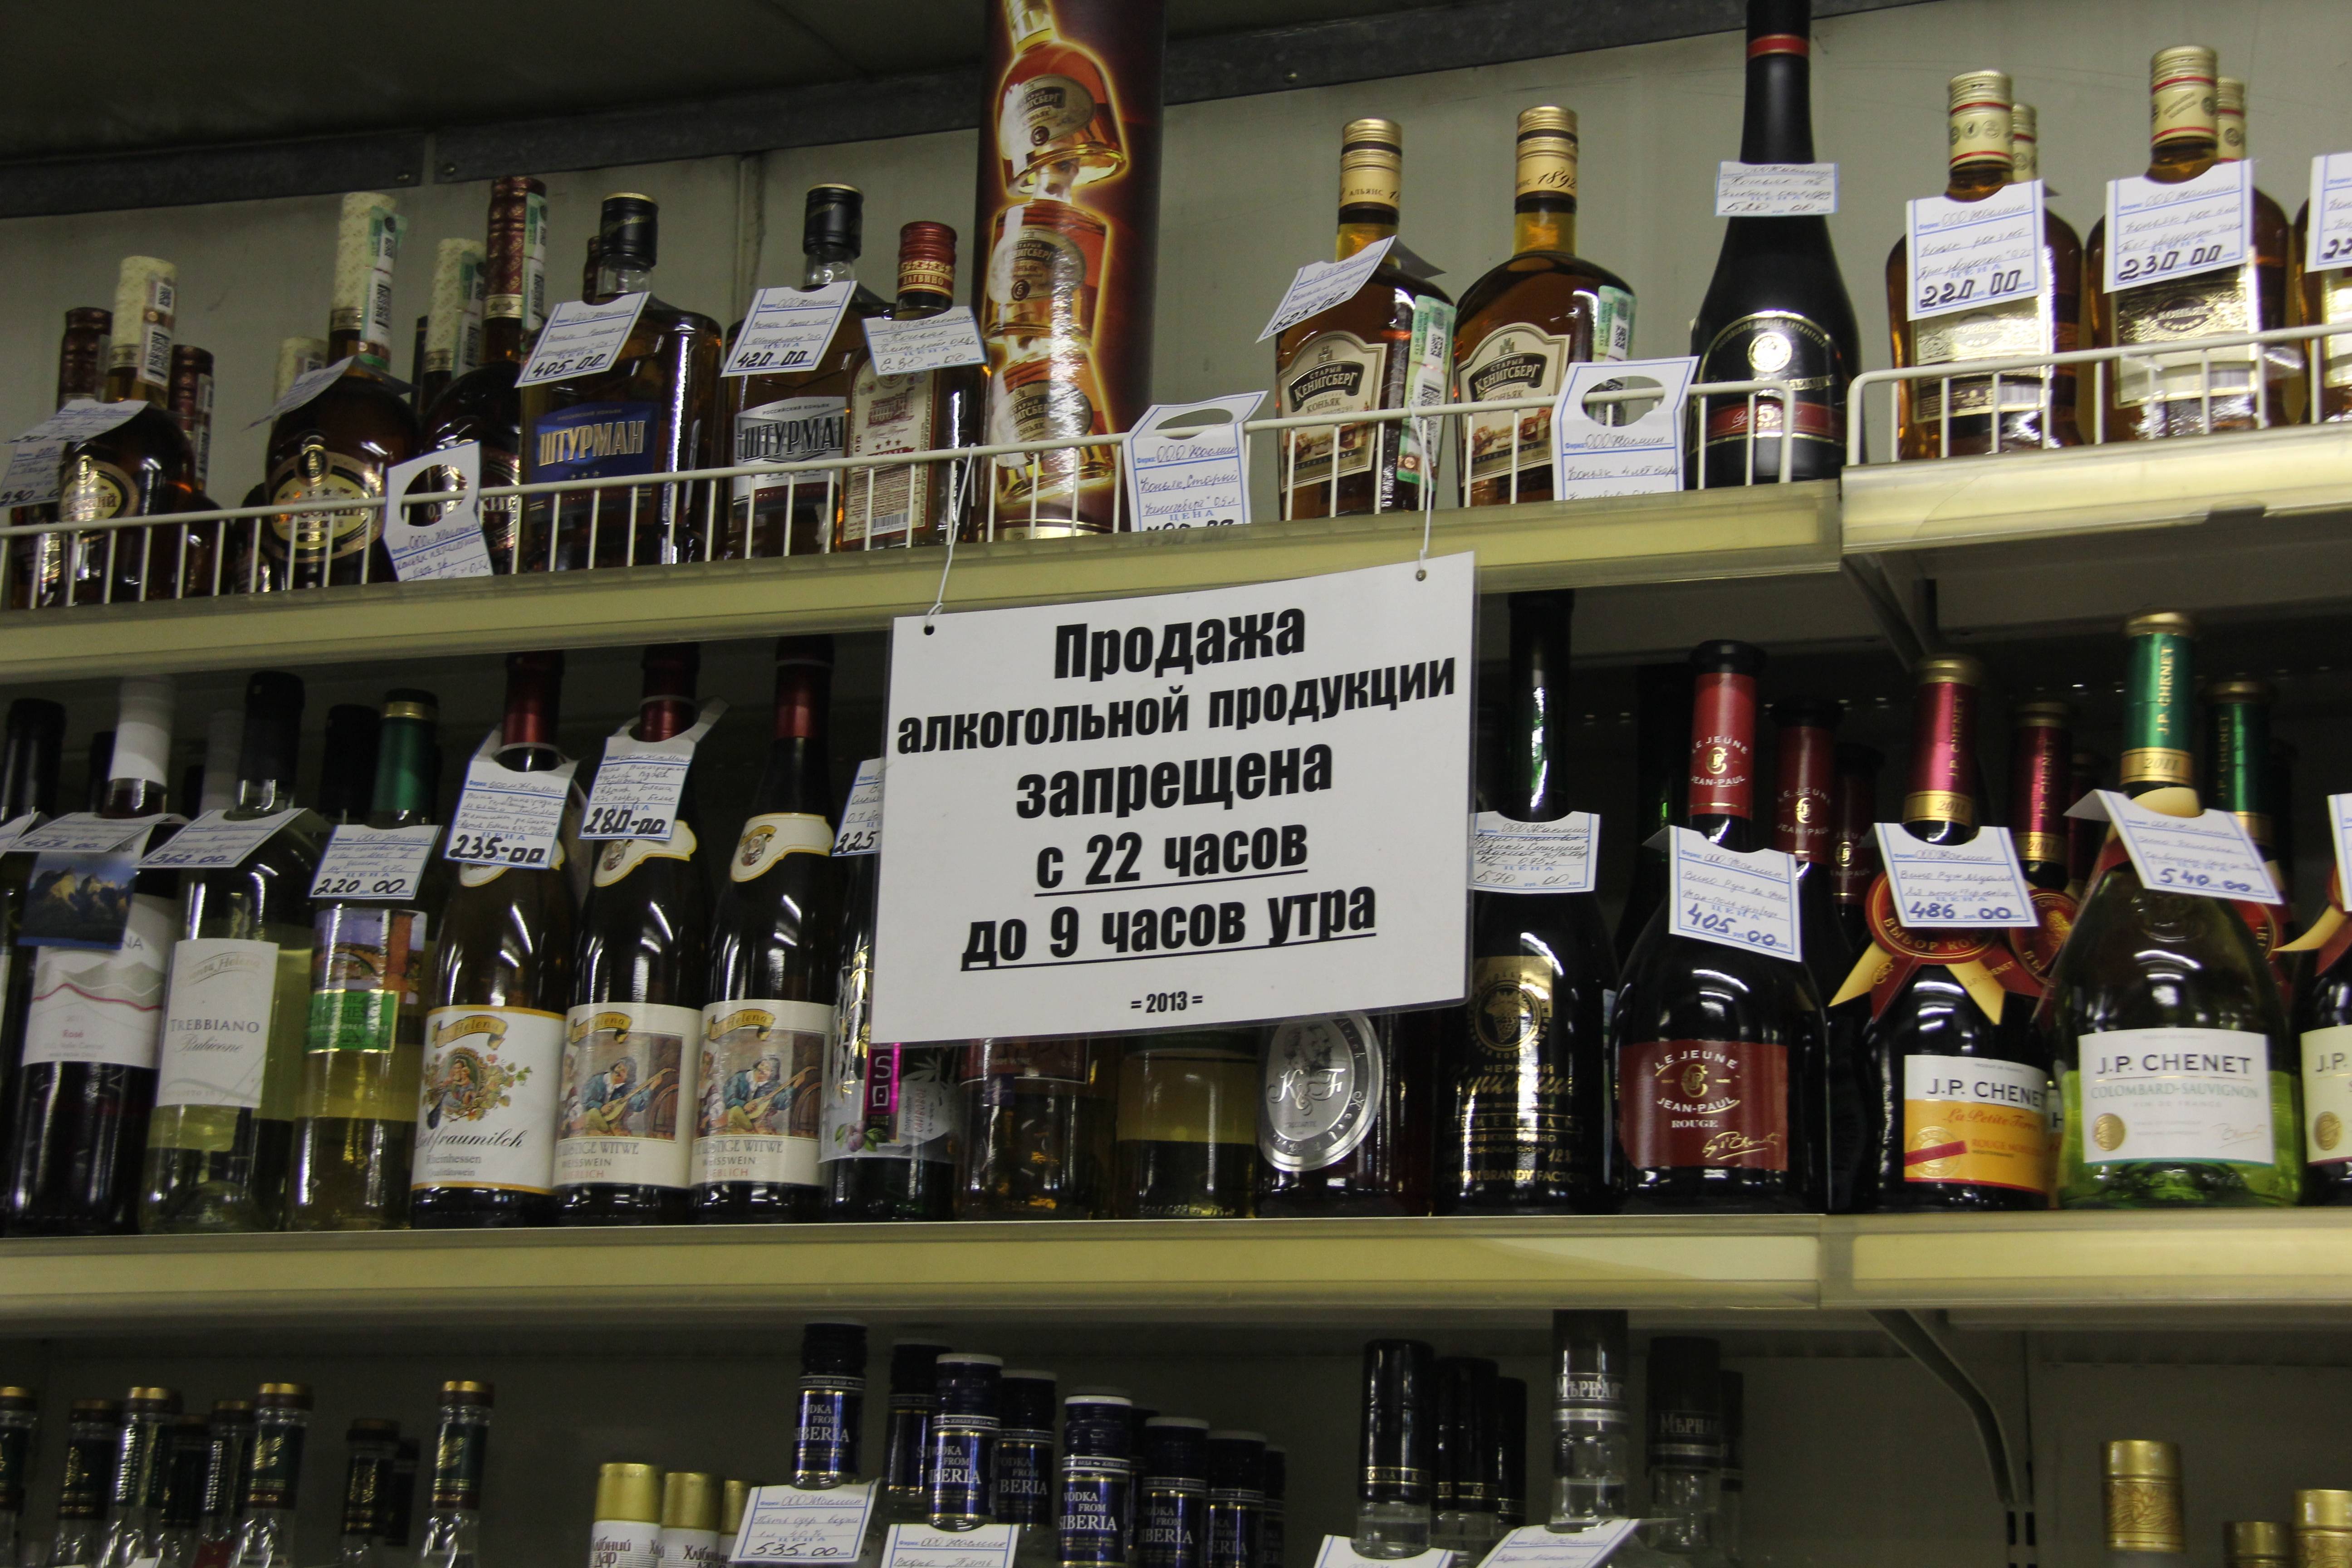 Время продажи алкоголя в москве и московской области в 2019 году | юридические советы